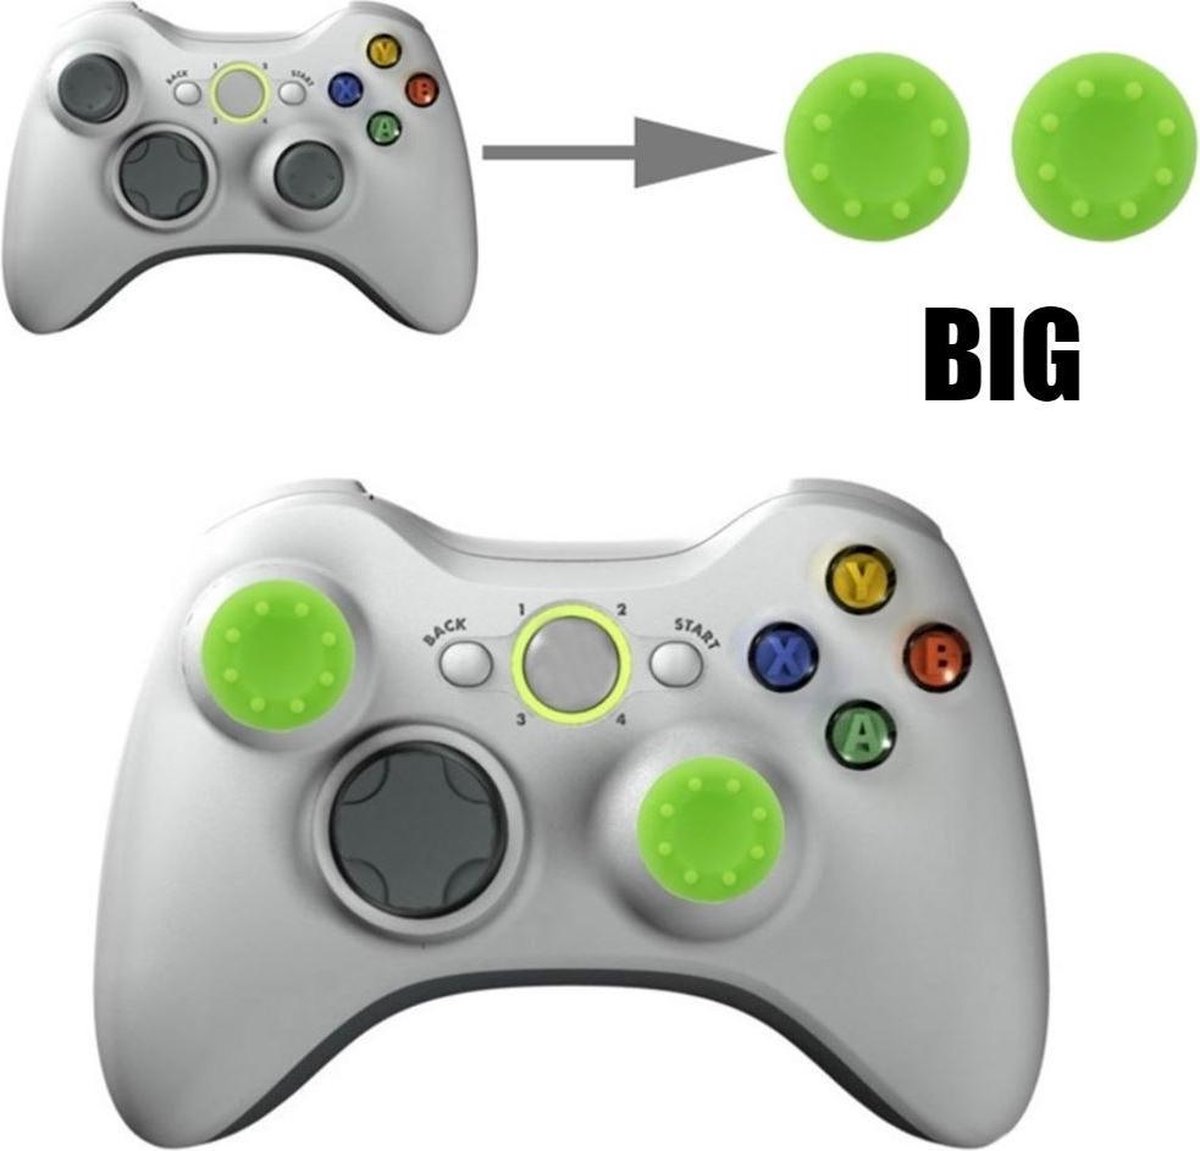 Thumb grips - Controller Thumbgrips - Joystick Cap - Thumbsticks - Thumb Grip Cap geschikt voor PS5, PS4, Switch Pro, Steamdeck en Xbox X/S - 2 stuks Groot 8 dots extra grip Groen